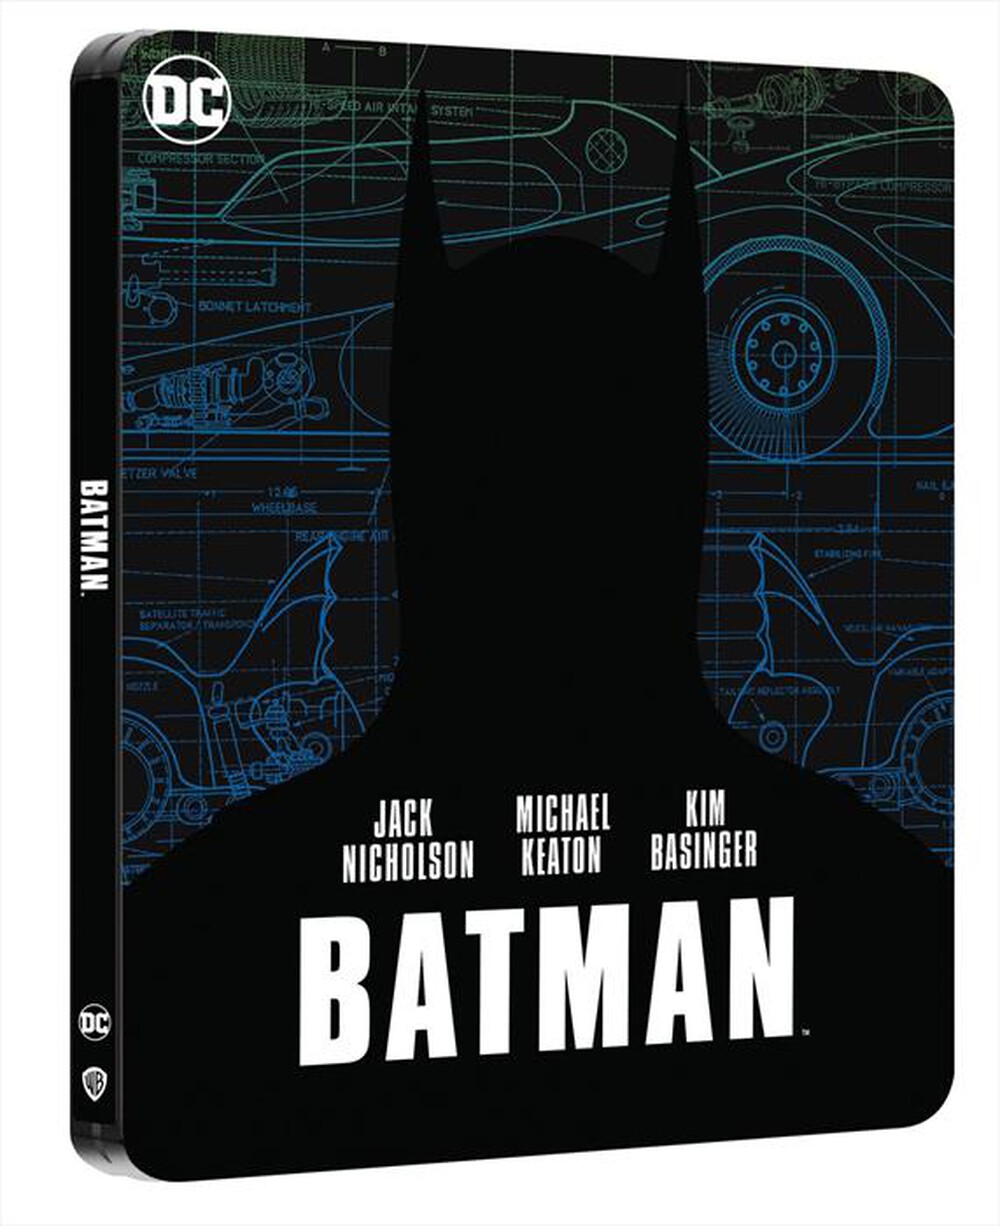 "WARNER HOME VIDEO - Batman Steelbook (4K Ultra Hd+Blu-Ray)"